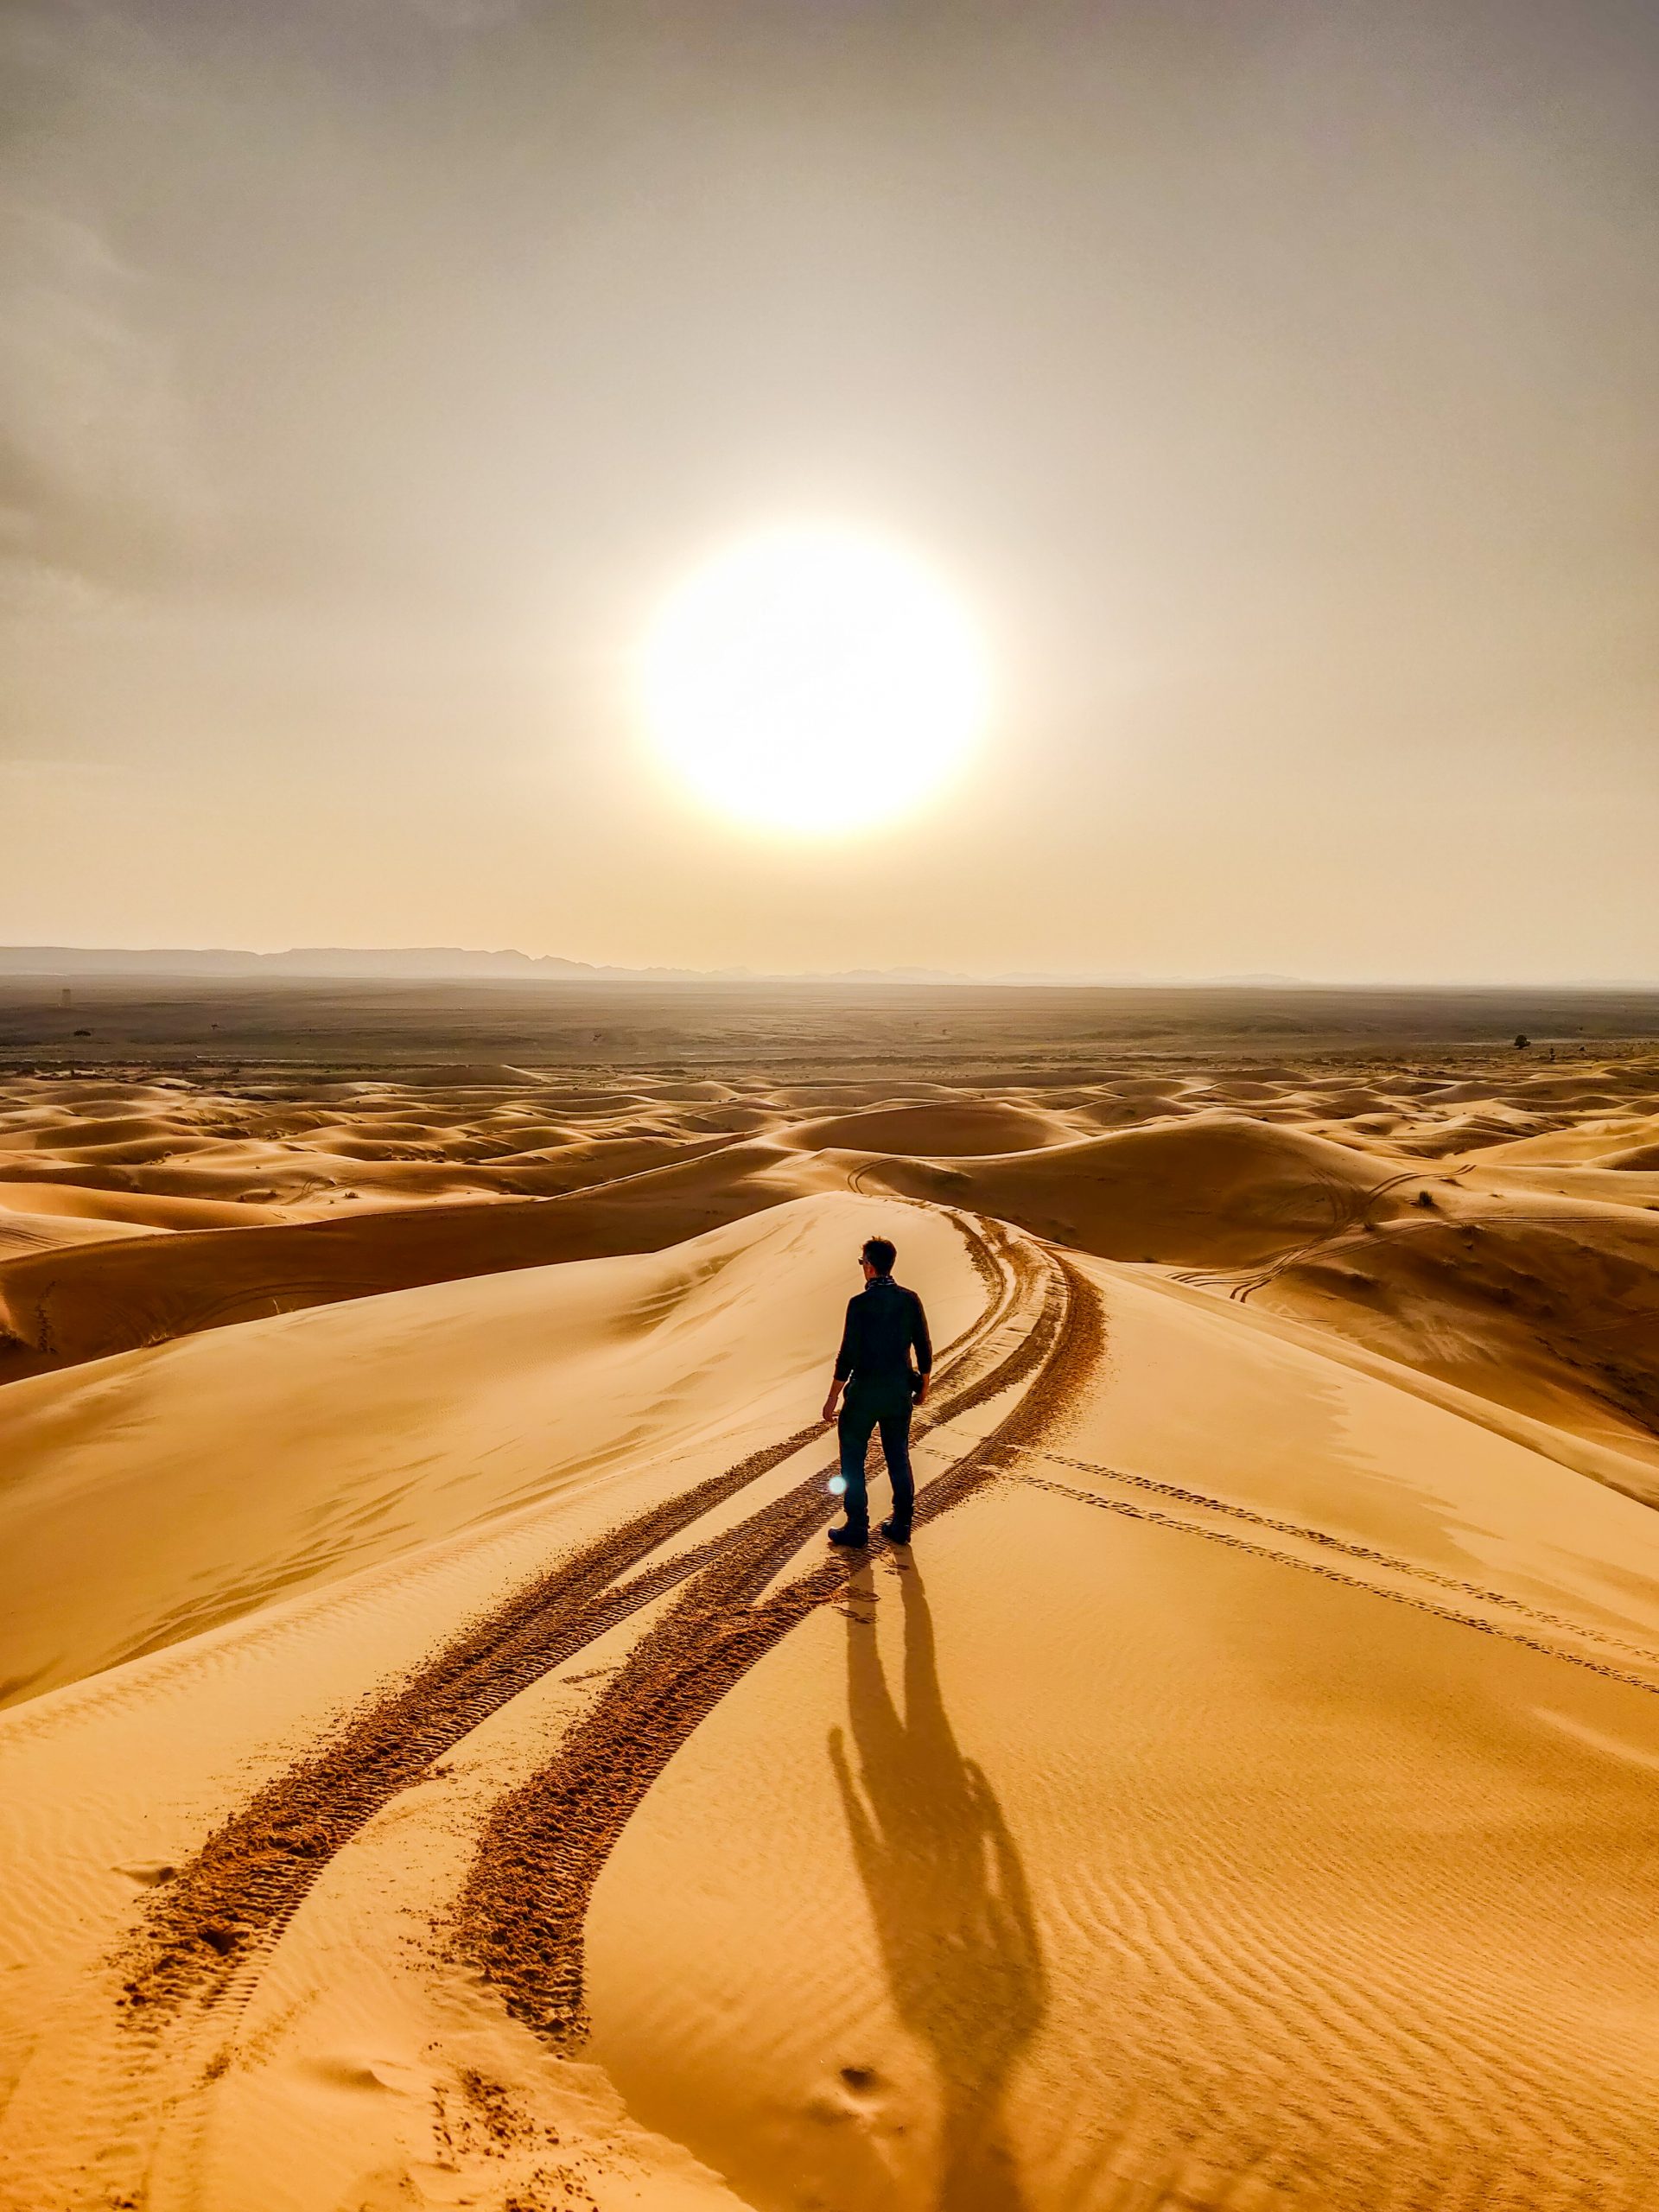 Vsoar e il deserto del Marocco